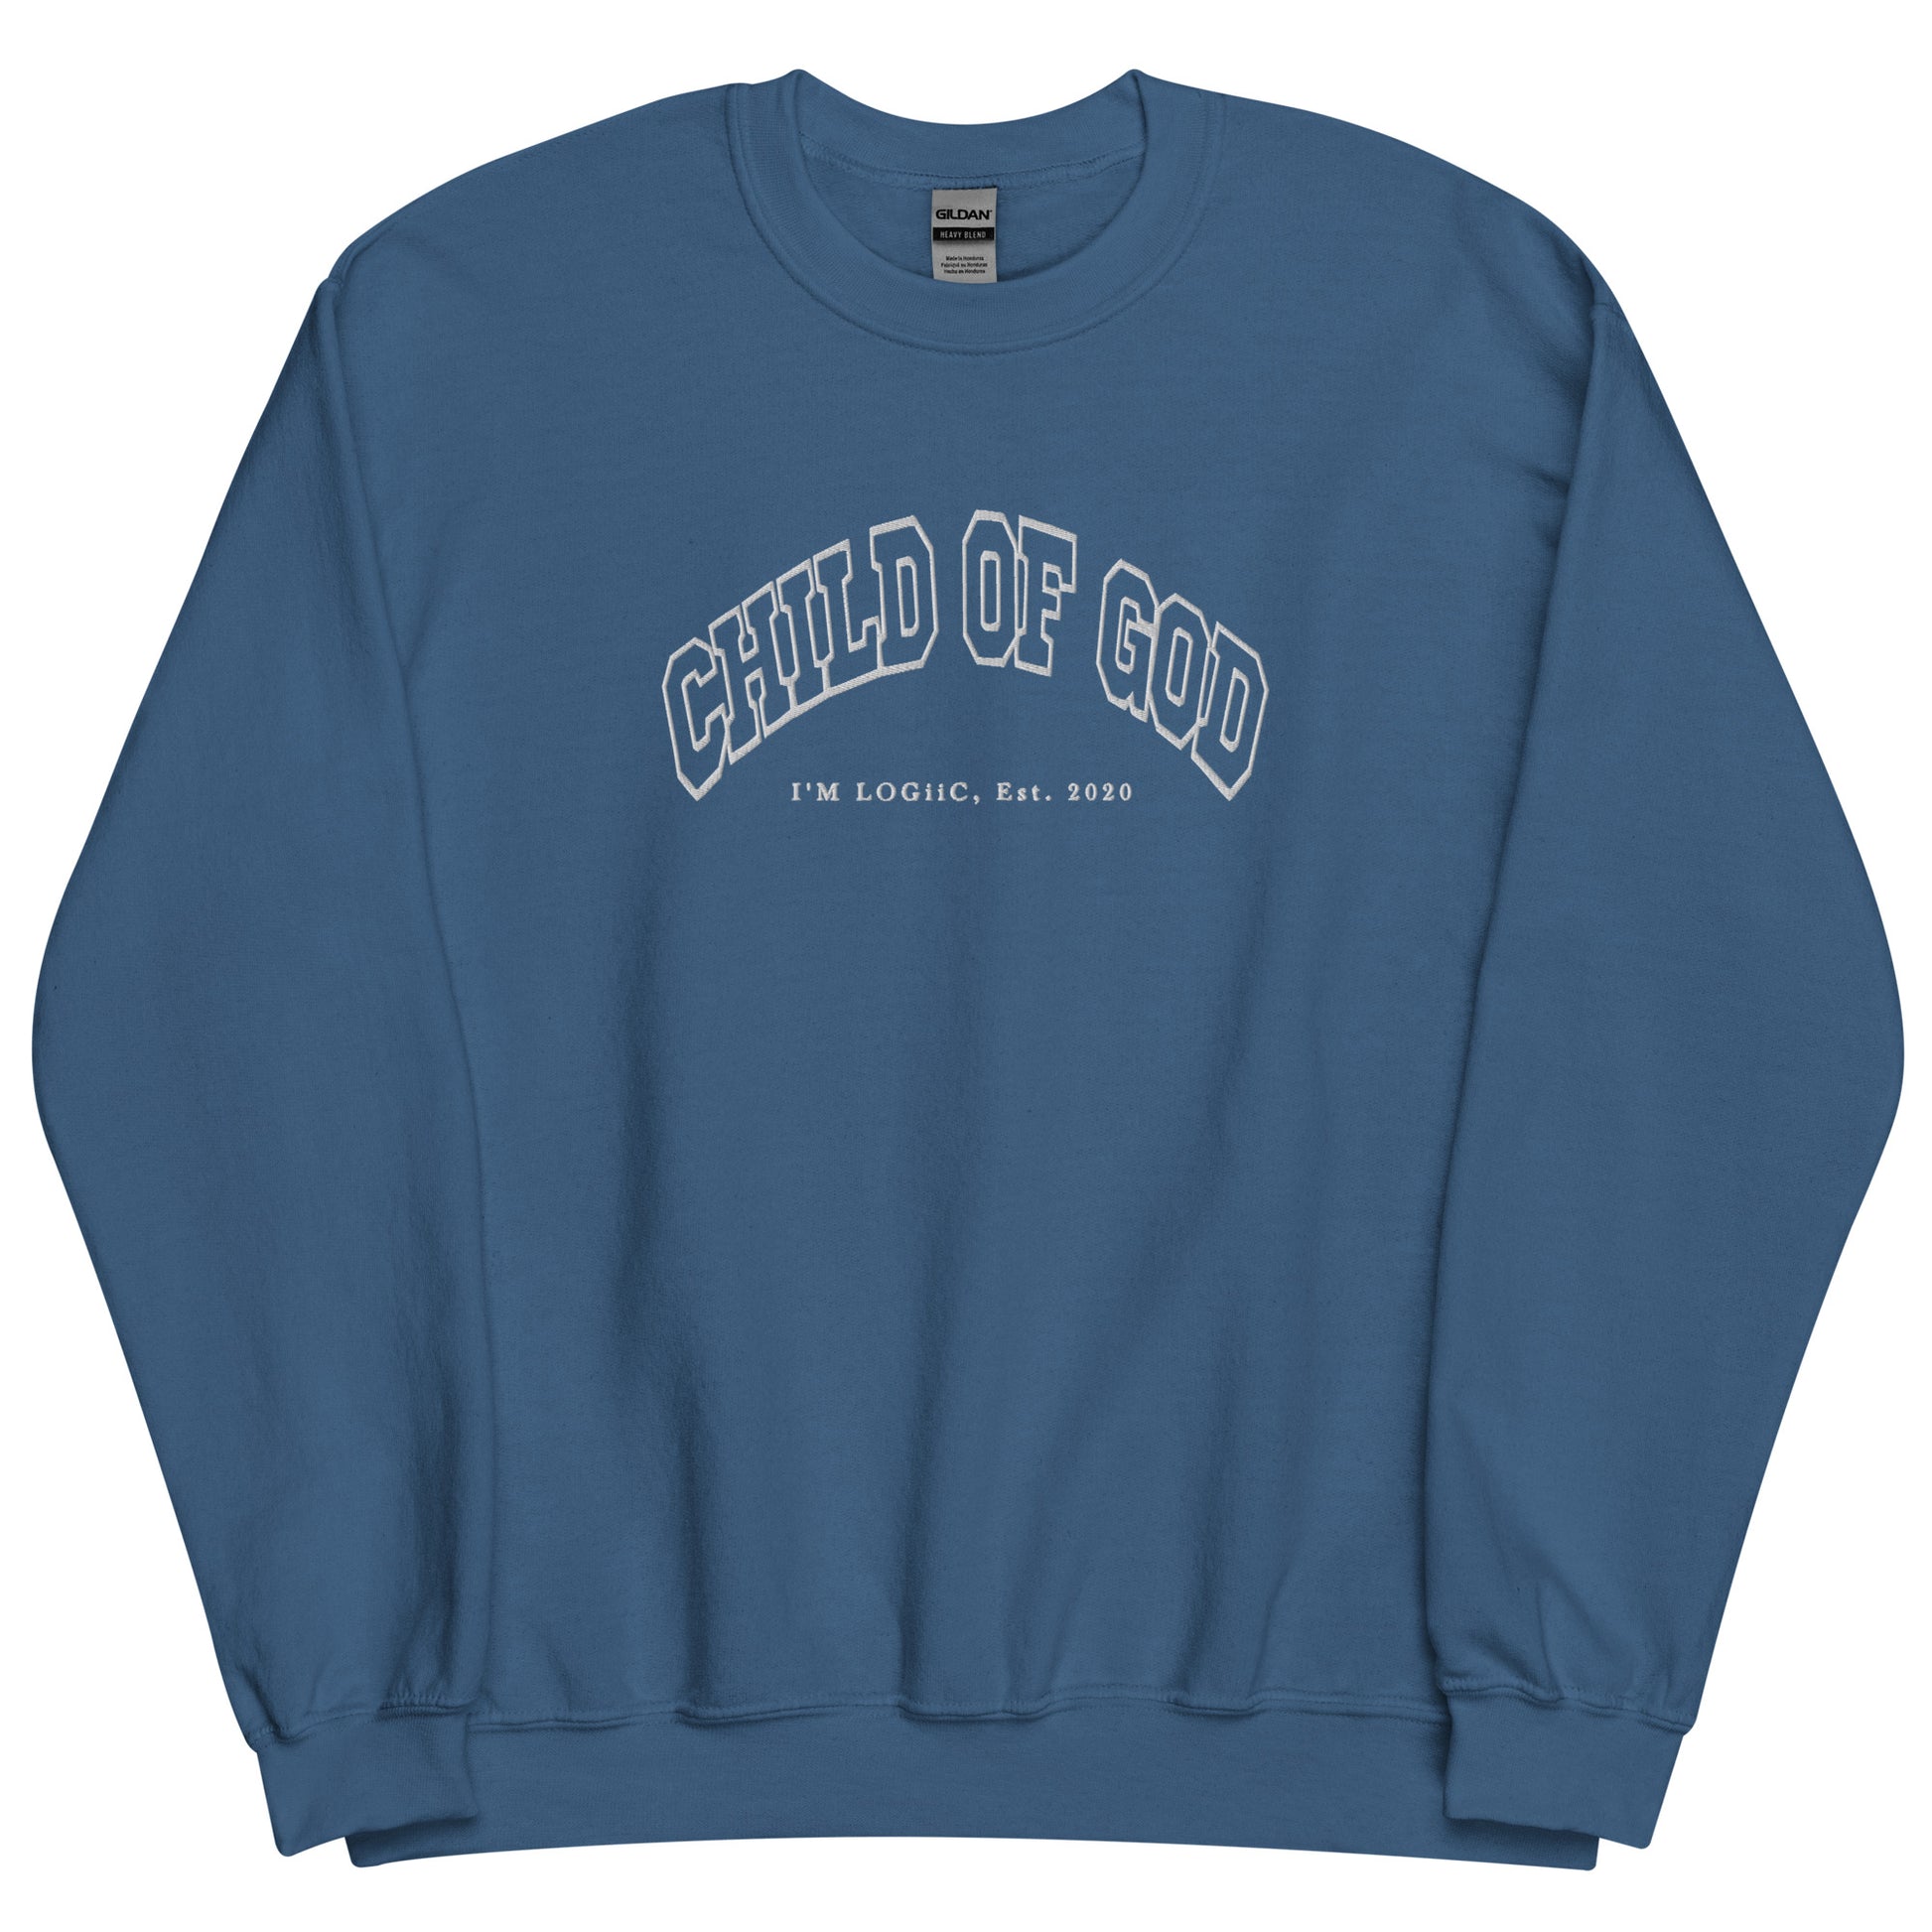 Child of God Unisex Sweatshirt - Indigo Blue / S